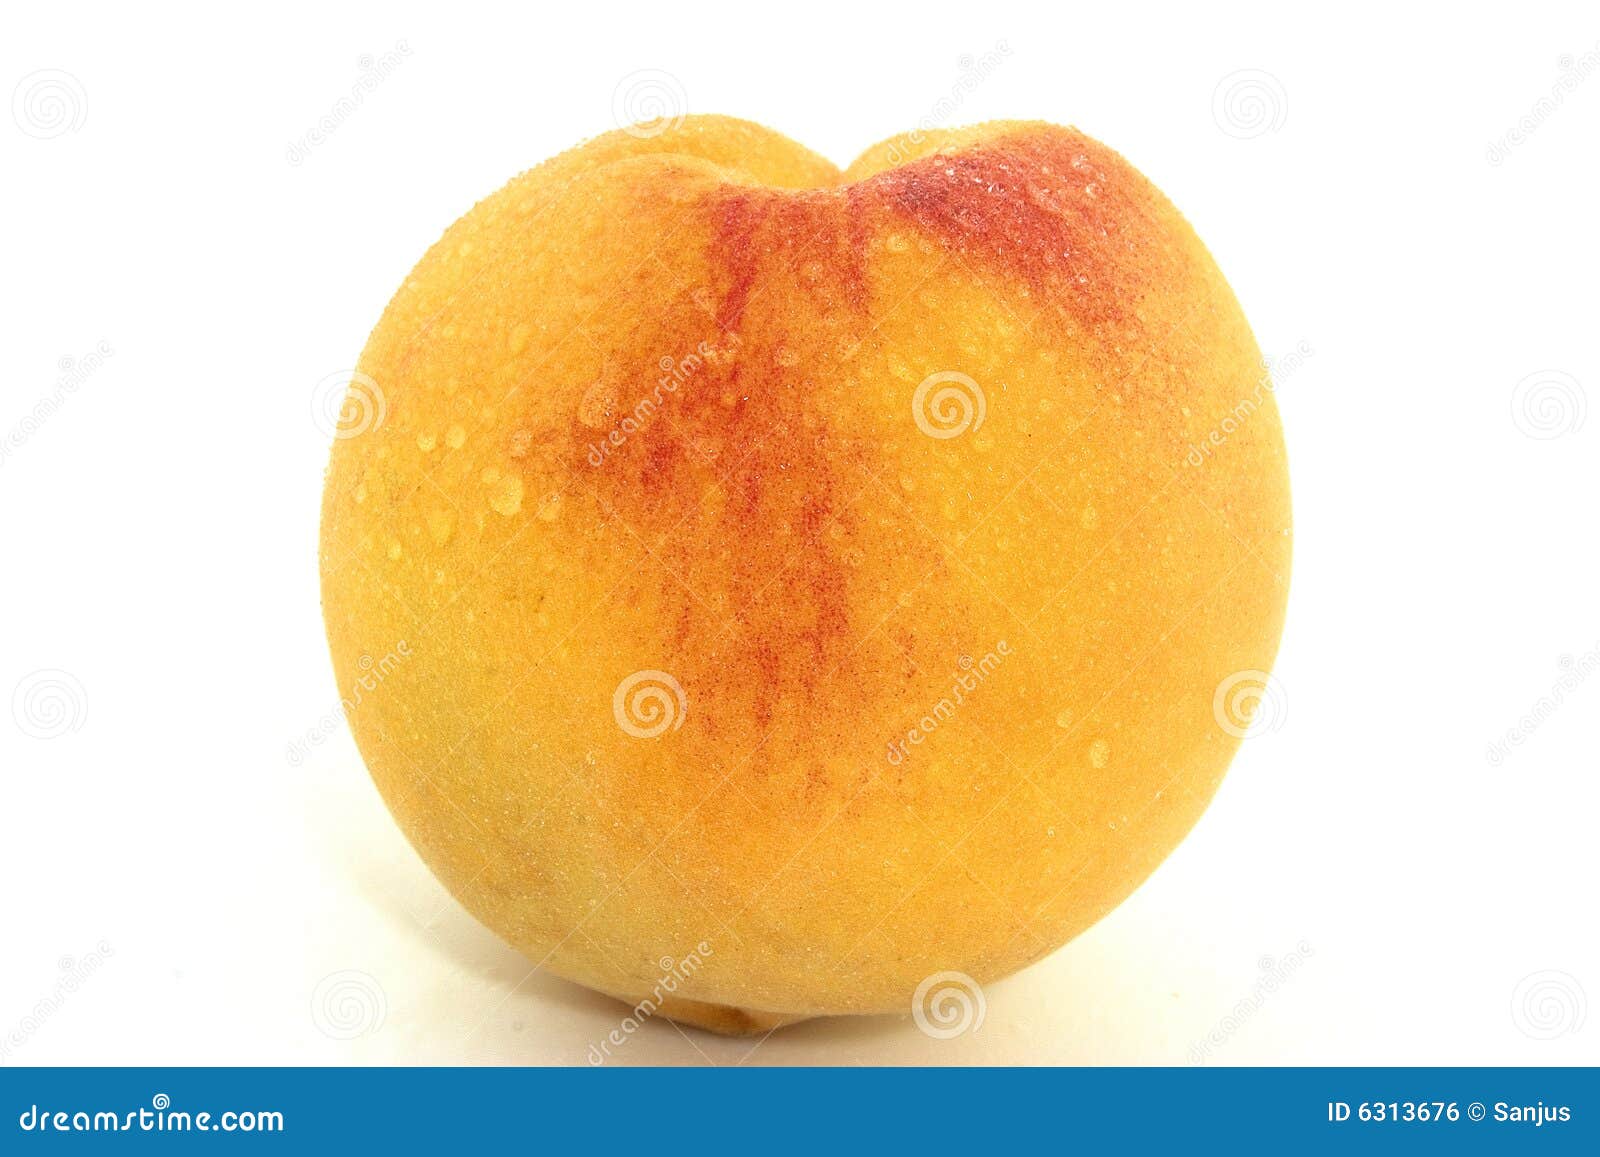 a fresh peach